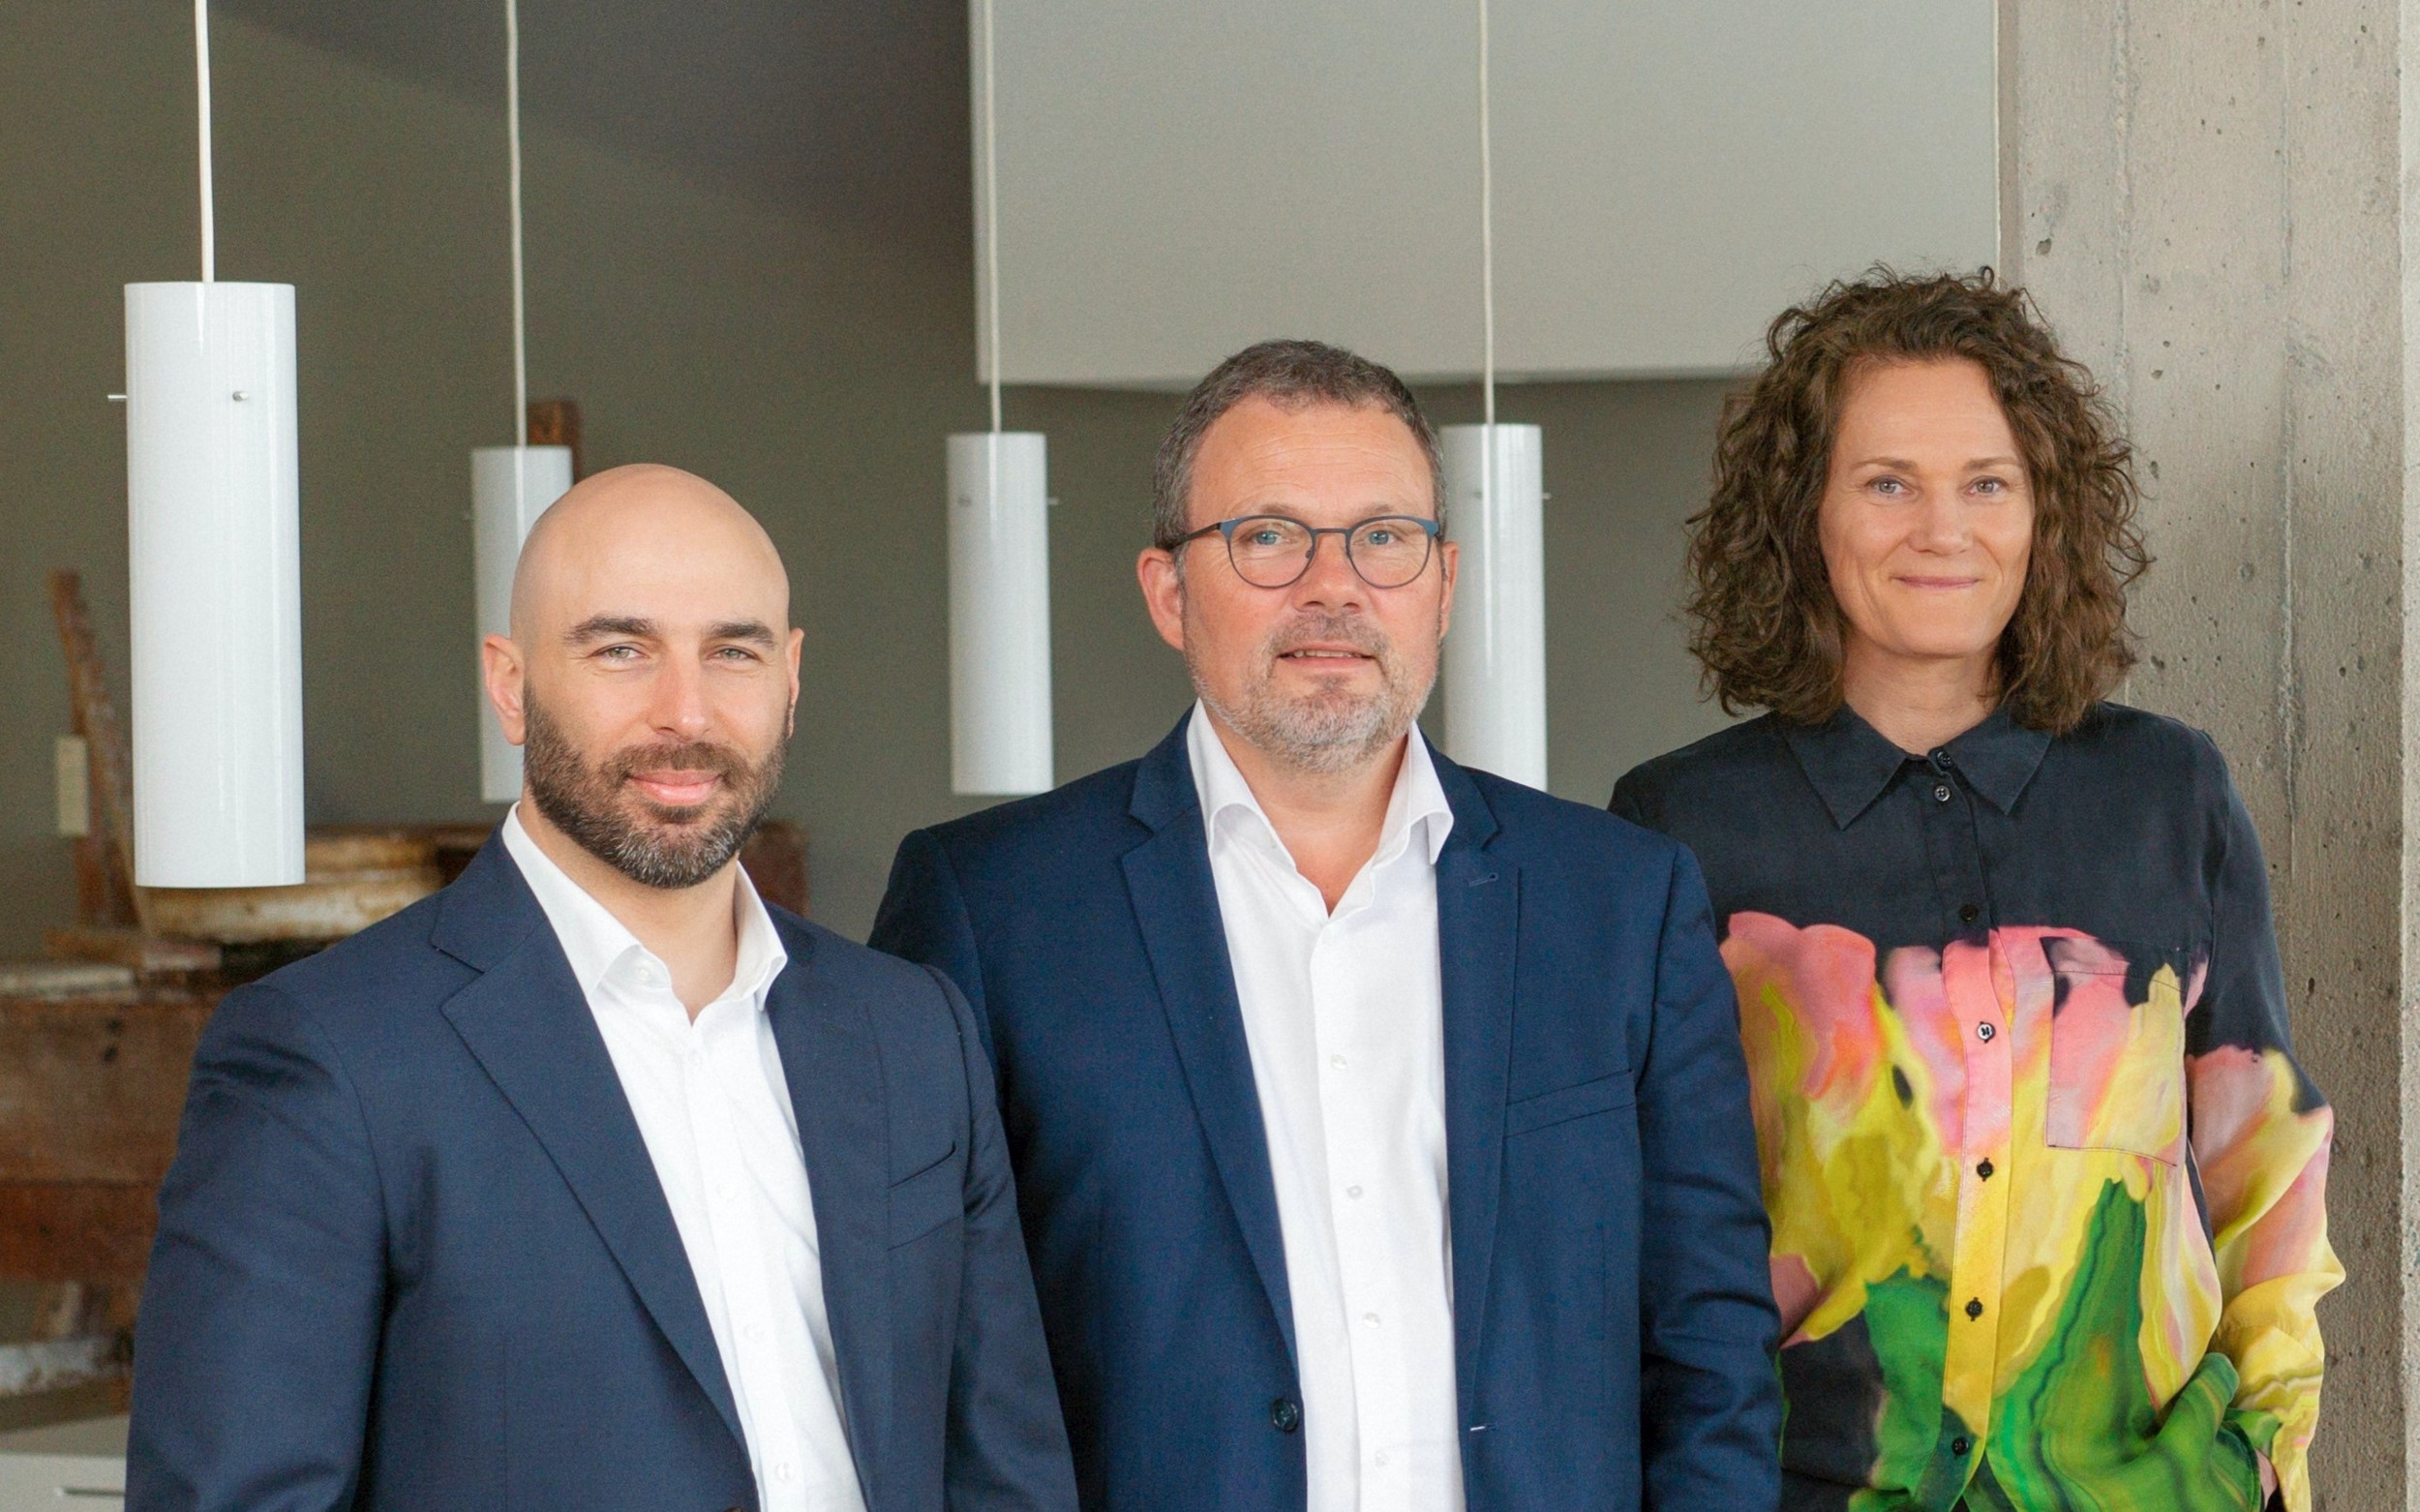 Freuen sich auf die Kooperation bei der Distribution von Rezyklaten: v.l.n.r. Kudret Sanli, Sales Director (Meraxis), Allan Poulsen, Chief Sales Officer und Helle Vingolf, CEO (beide RC Plast).